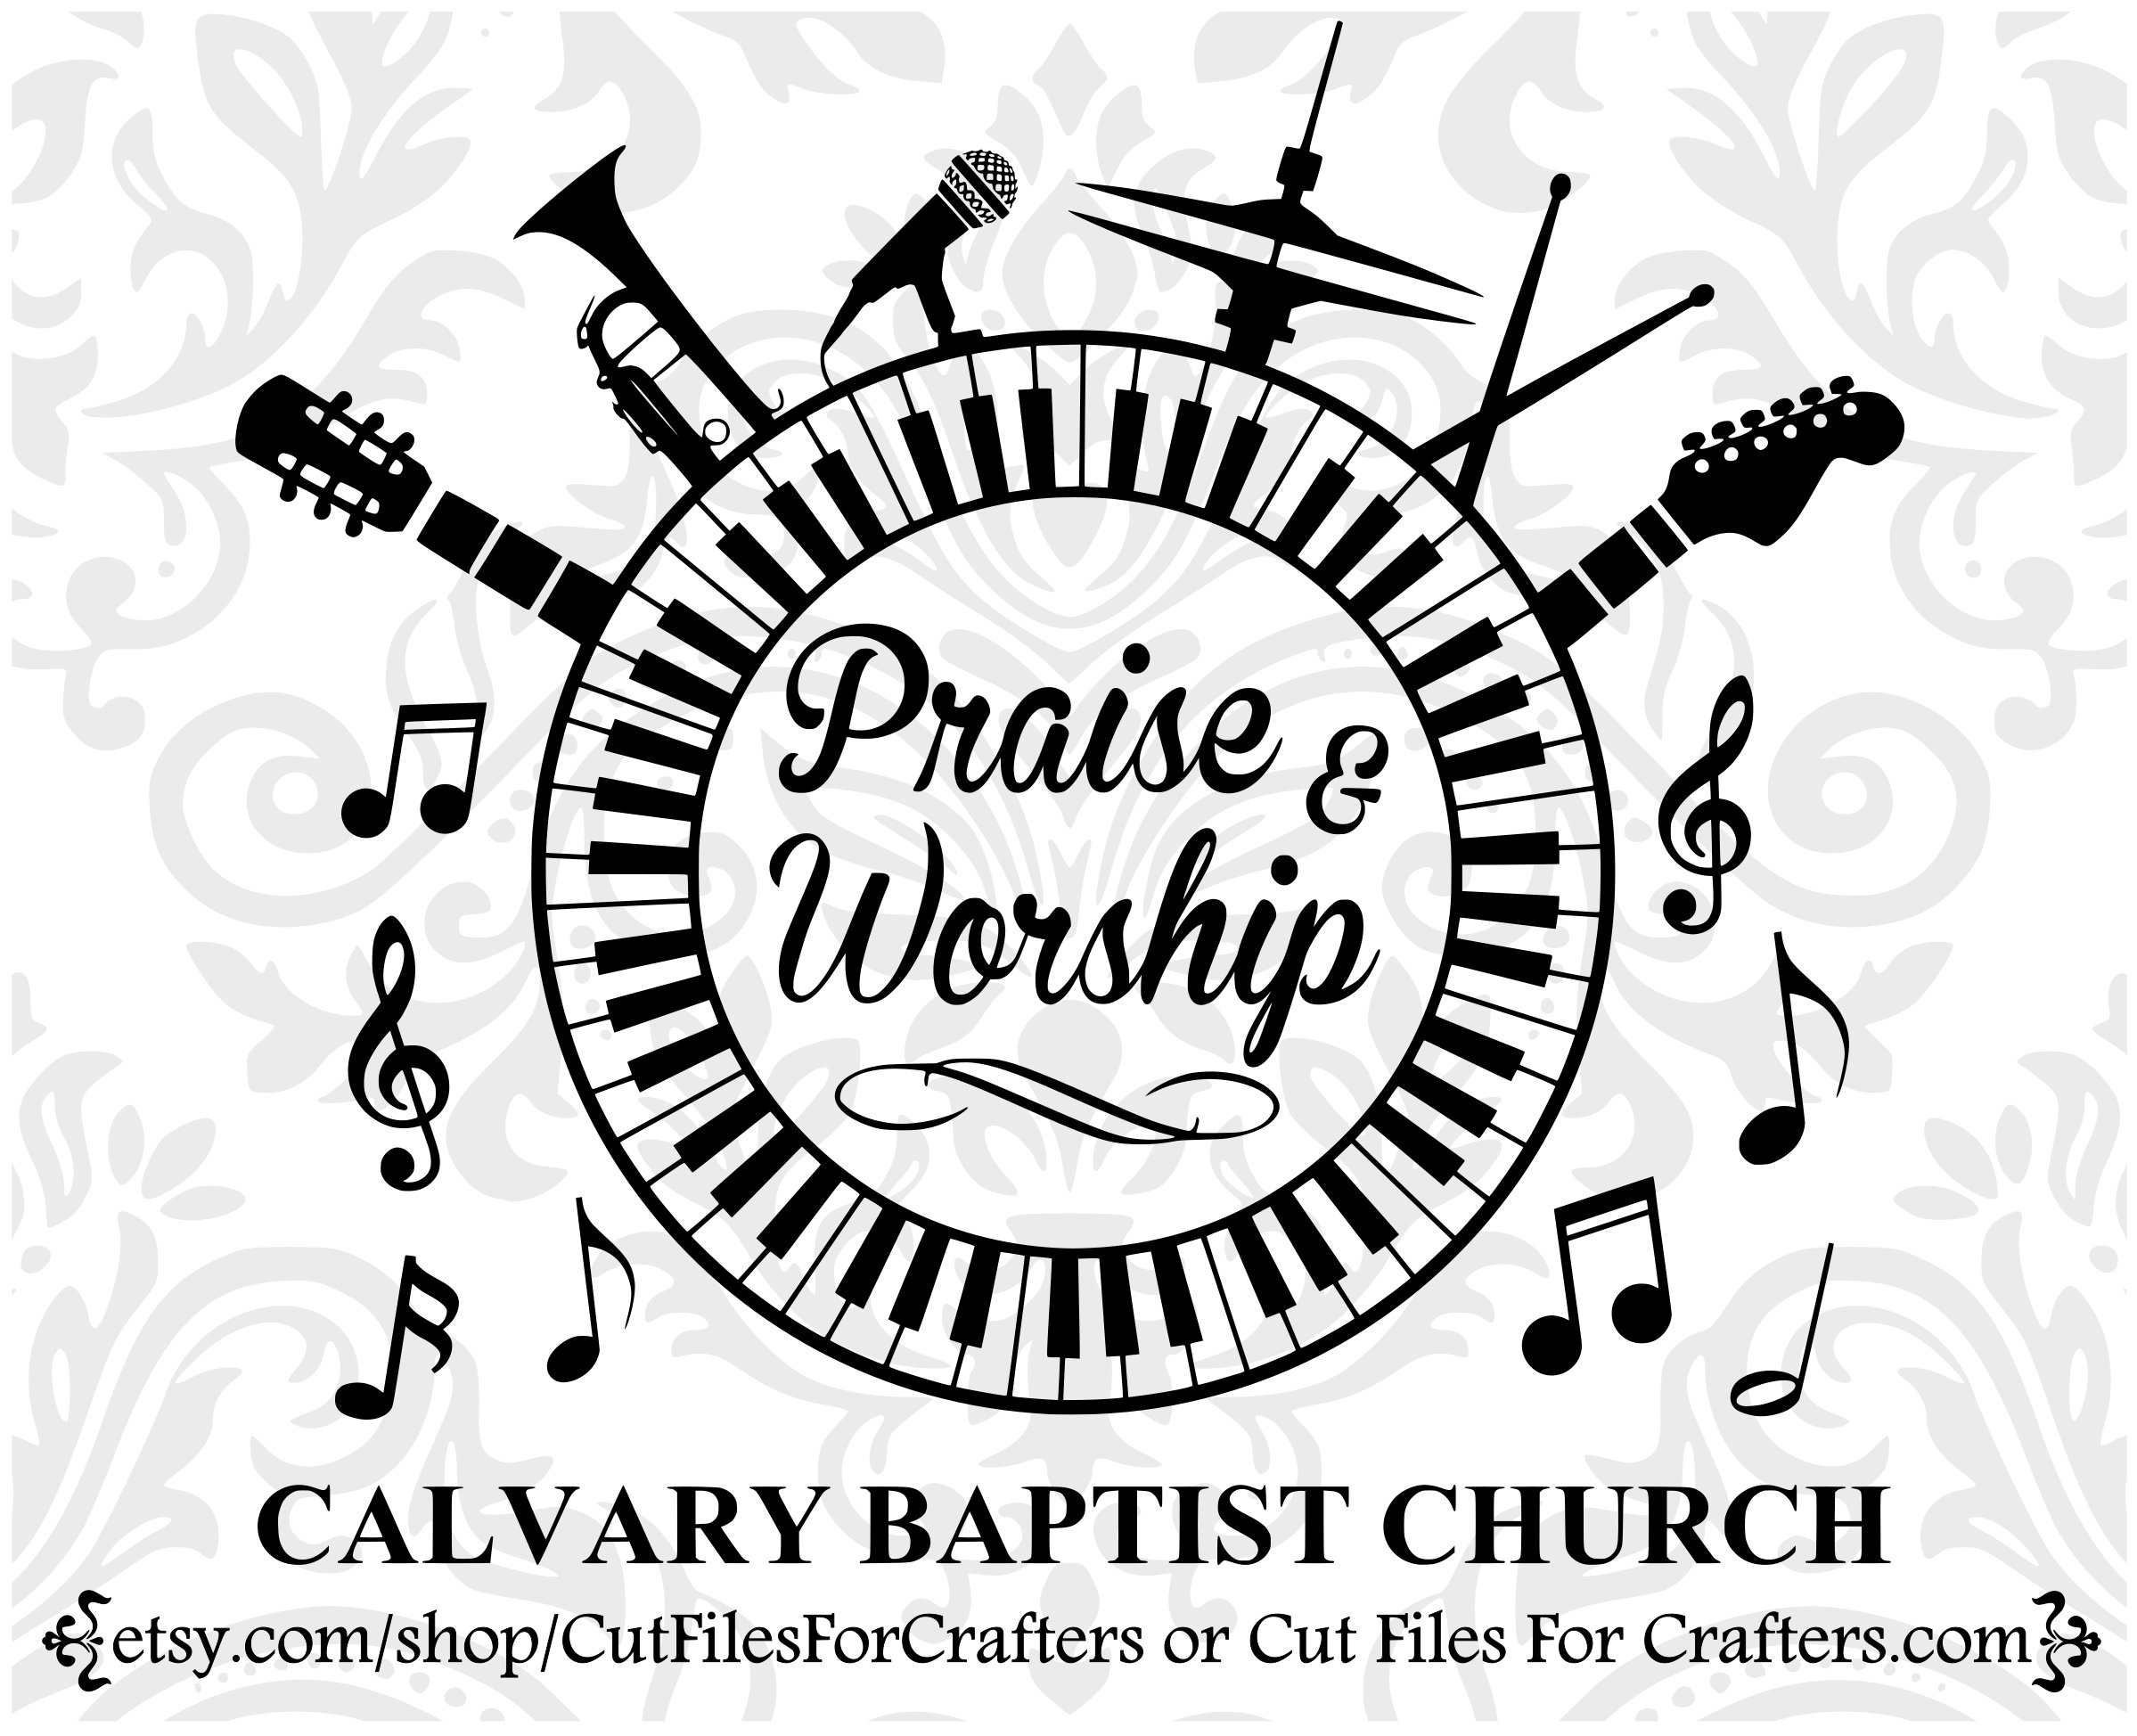 Praise & Worship Team, Venture Church